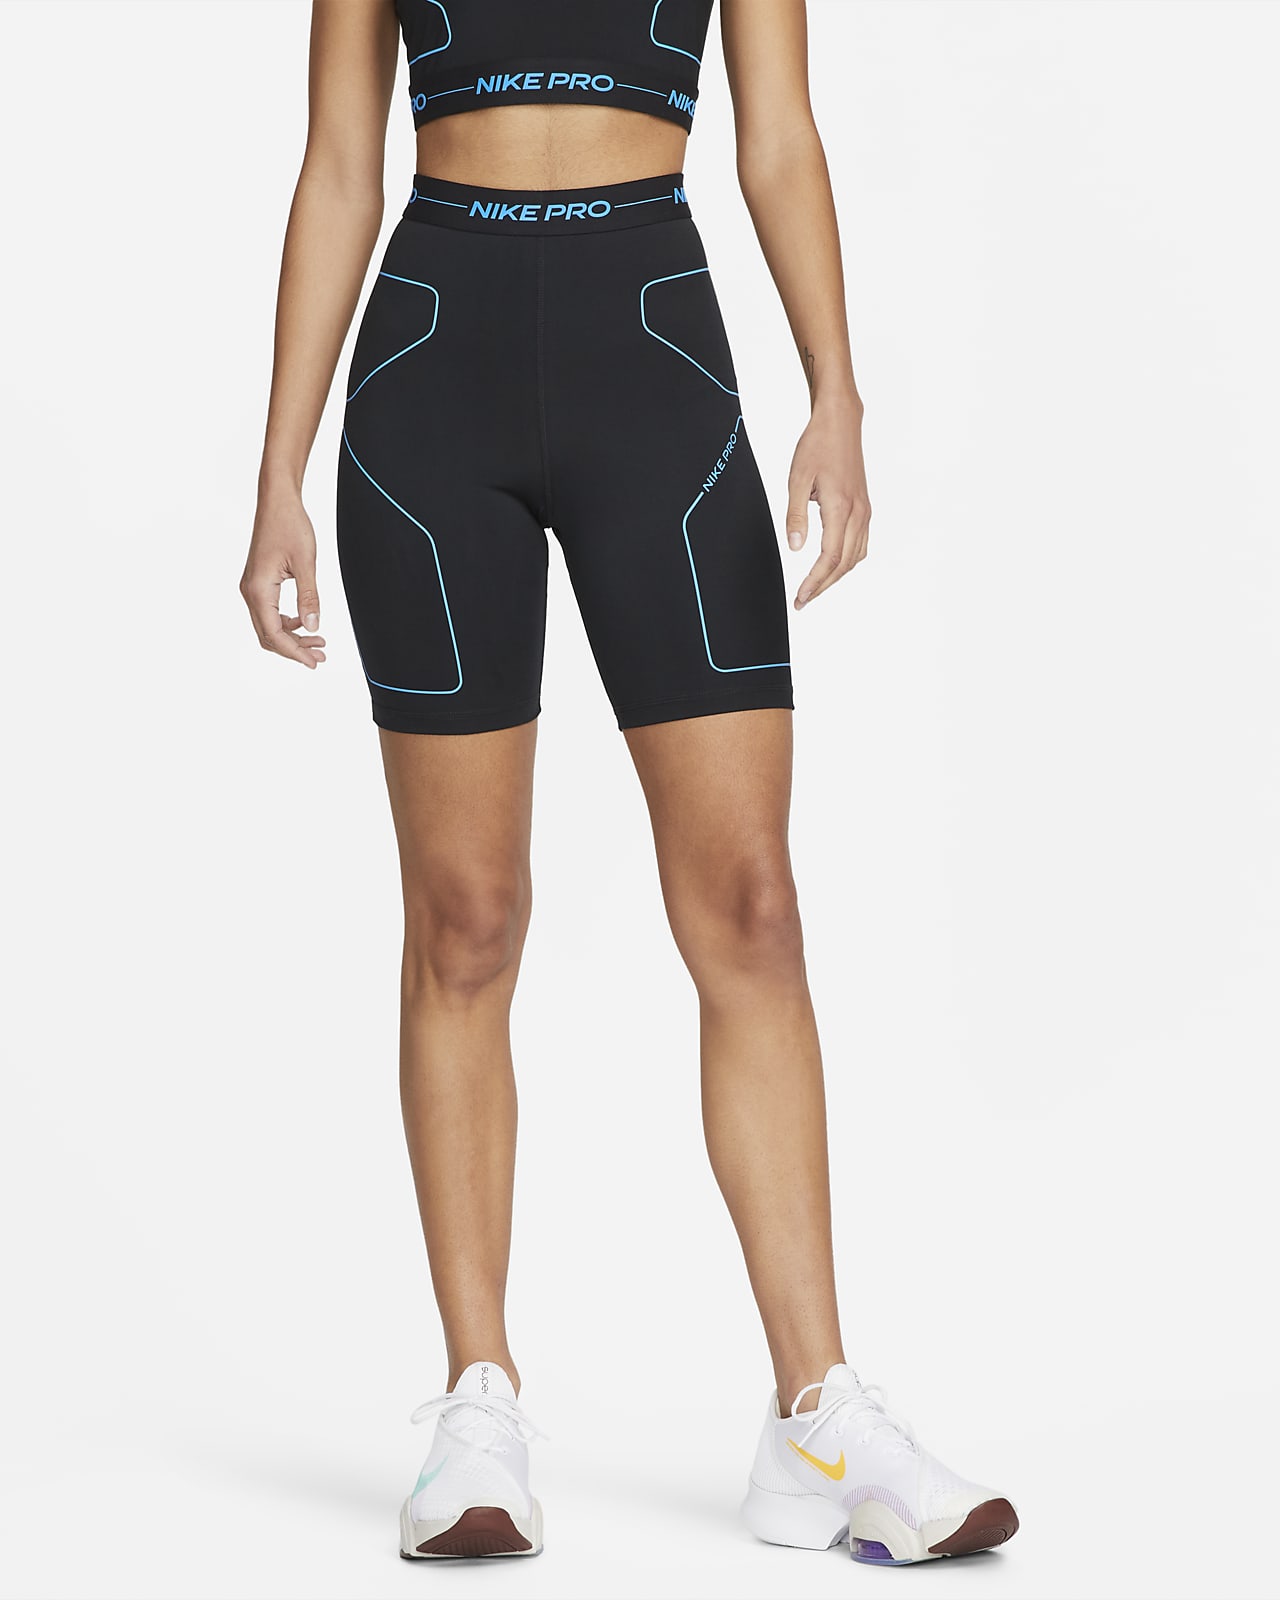 Nike Pro Trainingsshorts mit hohem Bund für Damen (ca. 18 cm)